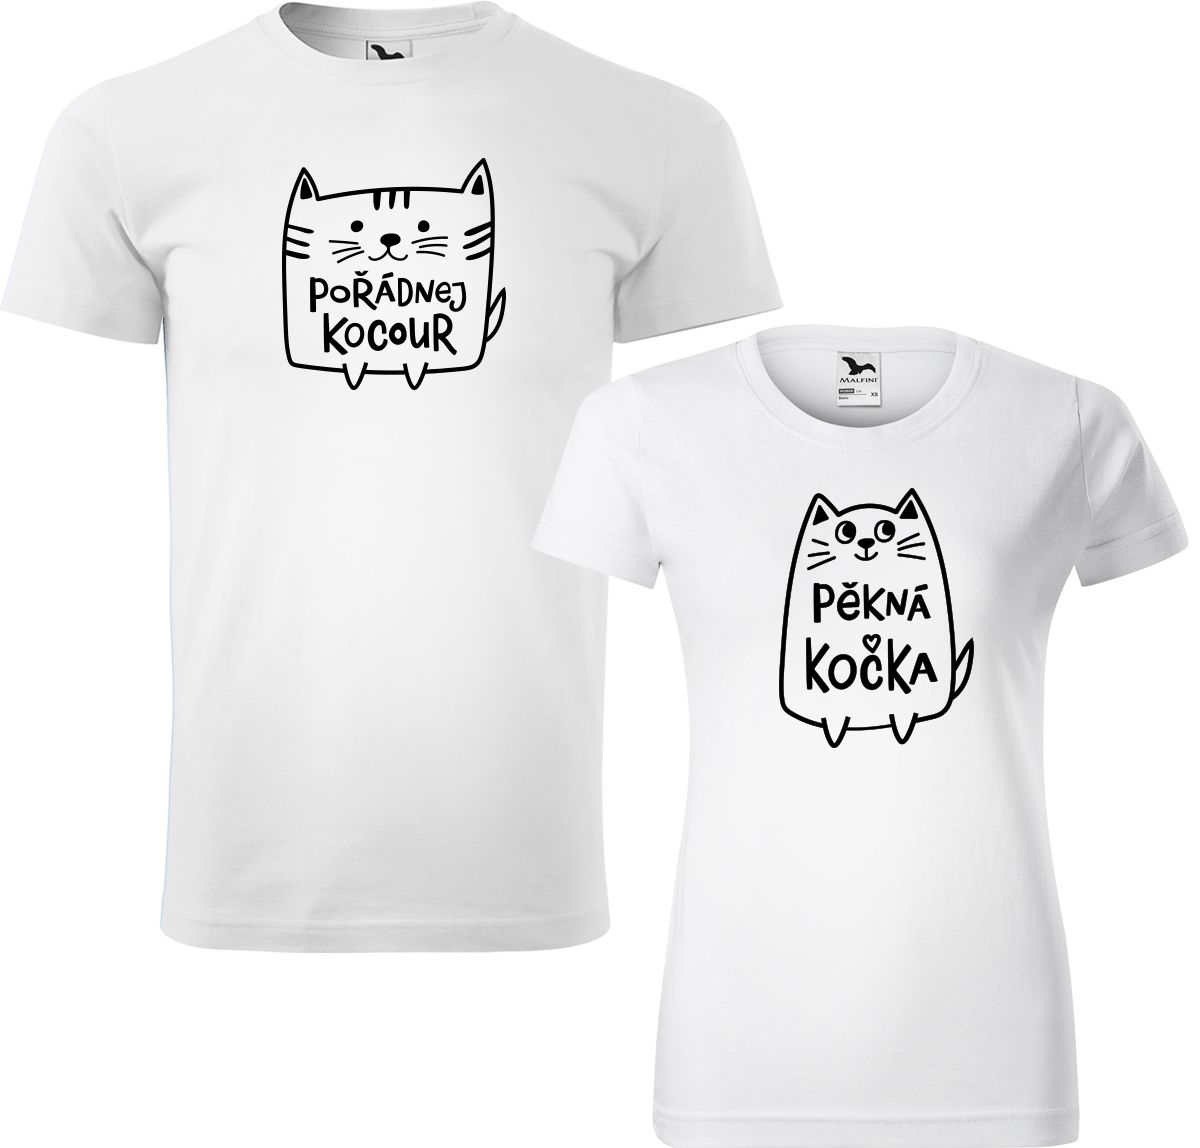 Trička pro páry - Pořádnej kocour a pěkná kočka Barva: Bílá (00), Velikost dámské tričko: S, Velikost pánské tričko: 2XL